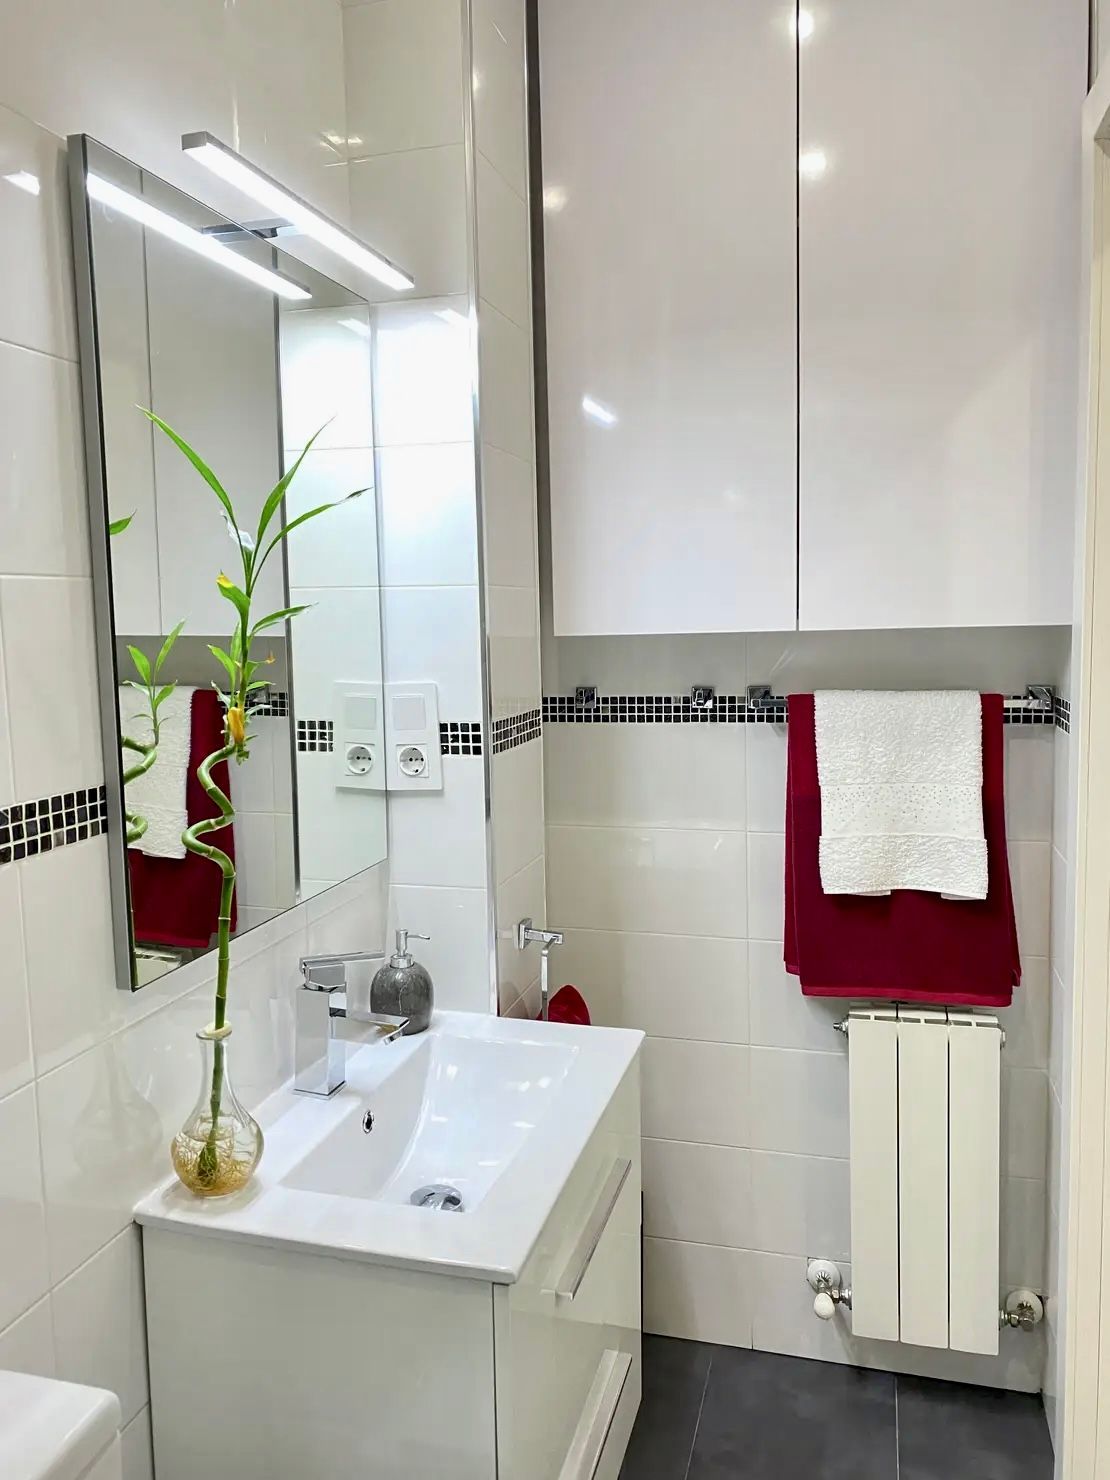 Reforma baño - Mini pisos asombrosos Inspiración al Cuadrado